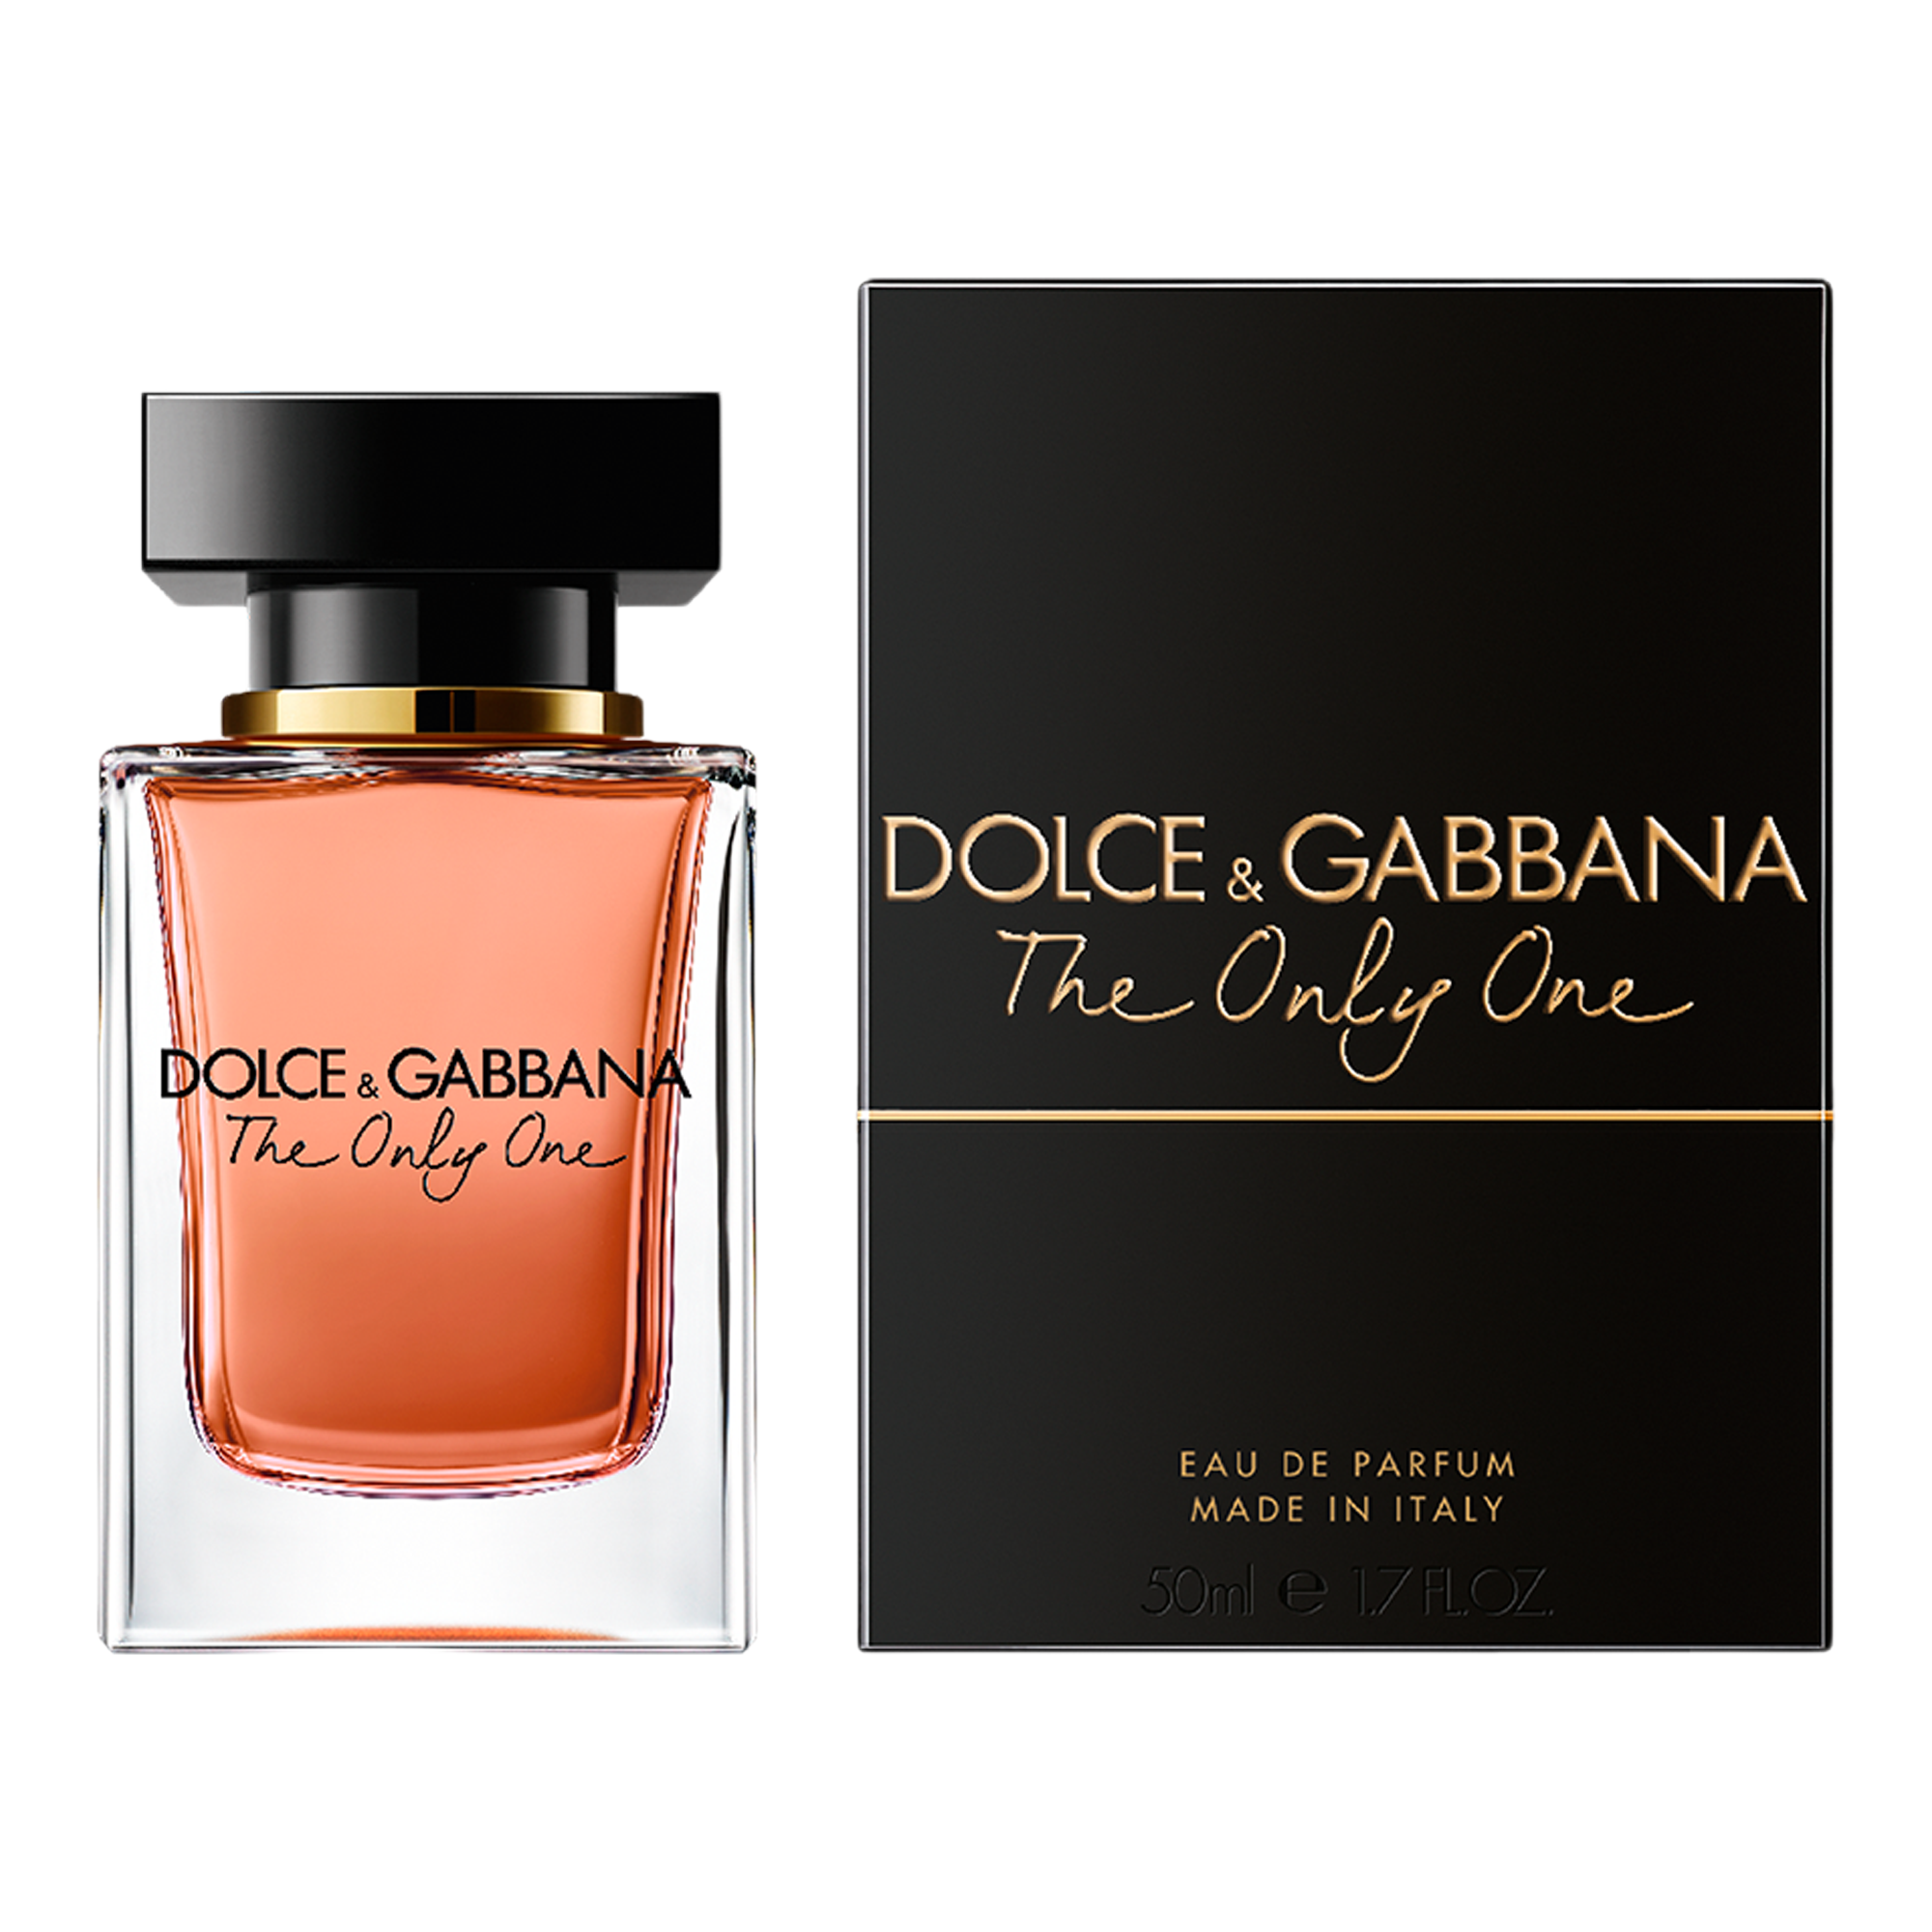 The Only One Eau de Parfum - Dolceu0026Gabbana | Ulta Beauty